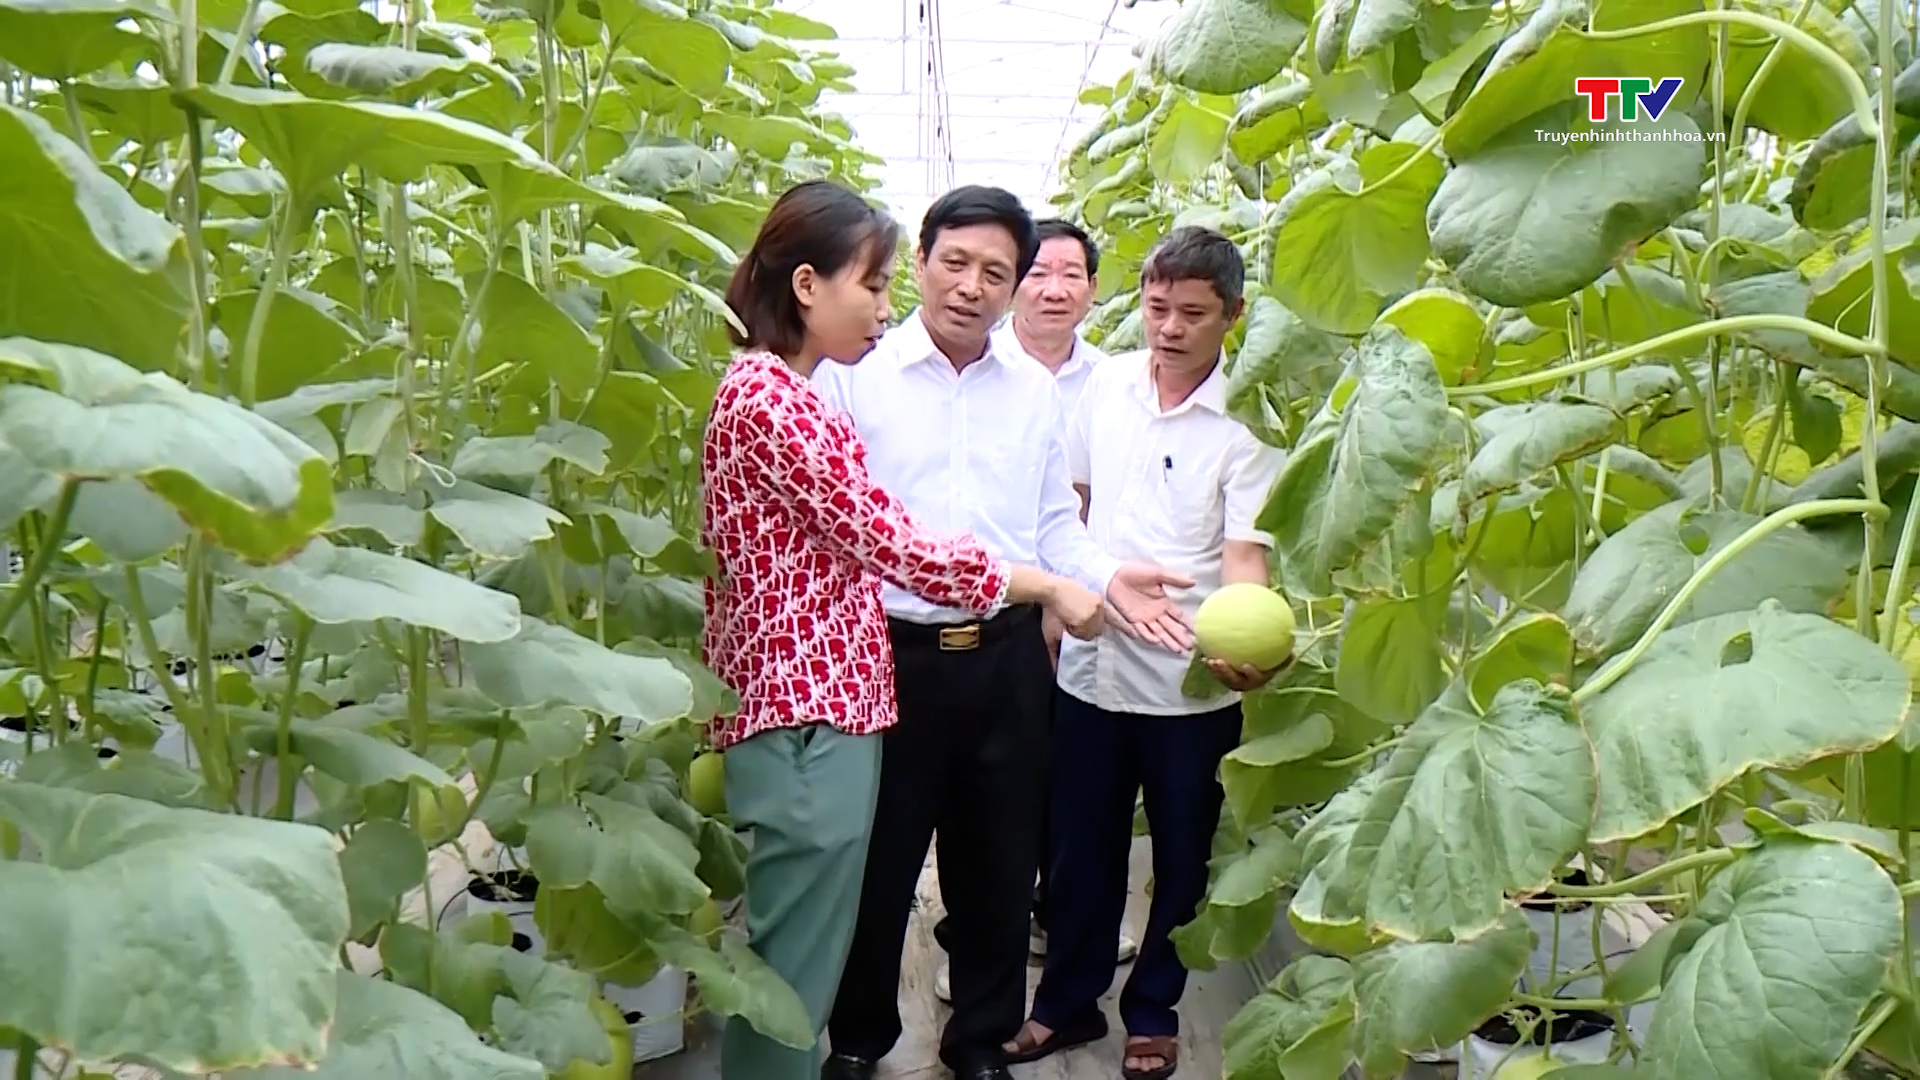 Hội Làm vườn và Trang trại Thanh Hóa góp phần nâng cao chất lượng, hiệu quả sản xuất nông nghiệp- Ảnh 6.